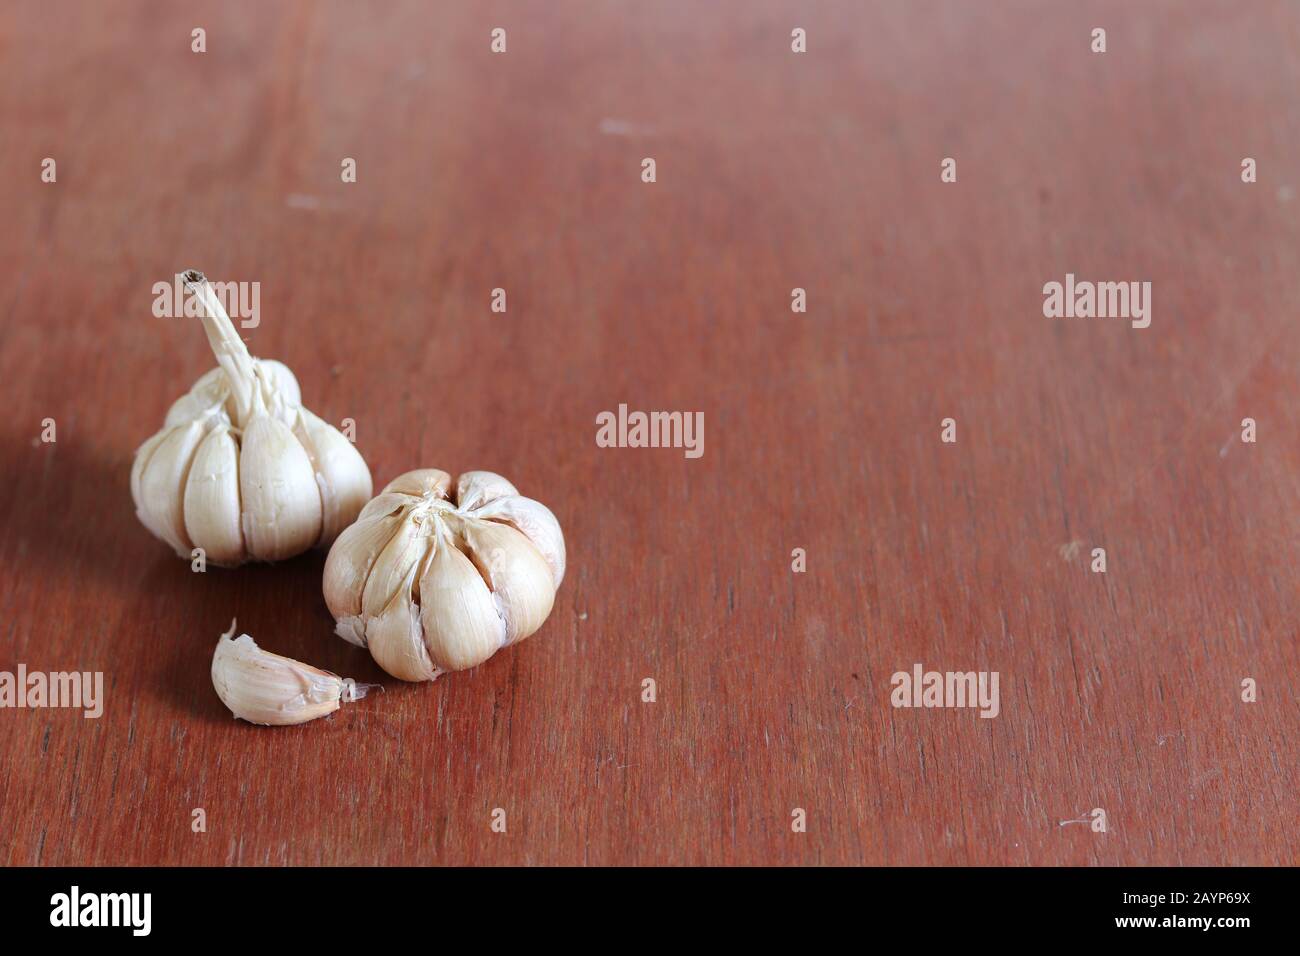 Bulbi d'aglio su uno sfondo di legno per mostrare il concetto di gastronomia, cucina ayurveda e medicina alternativa Foto Stock